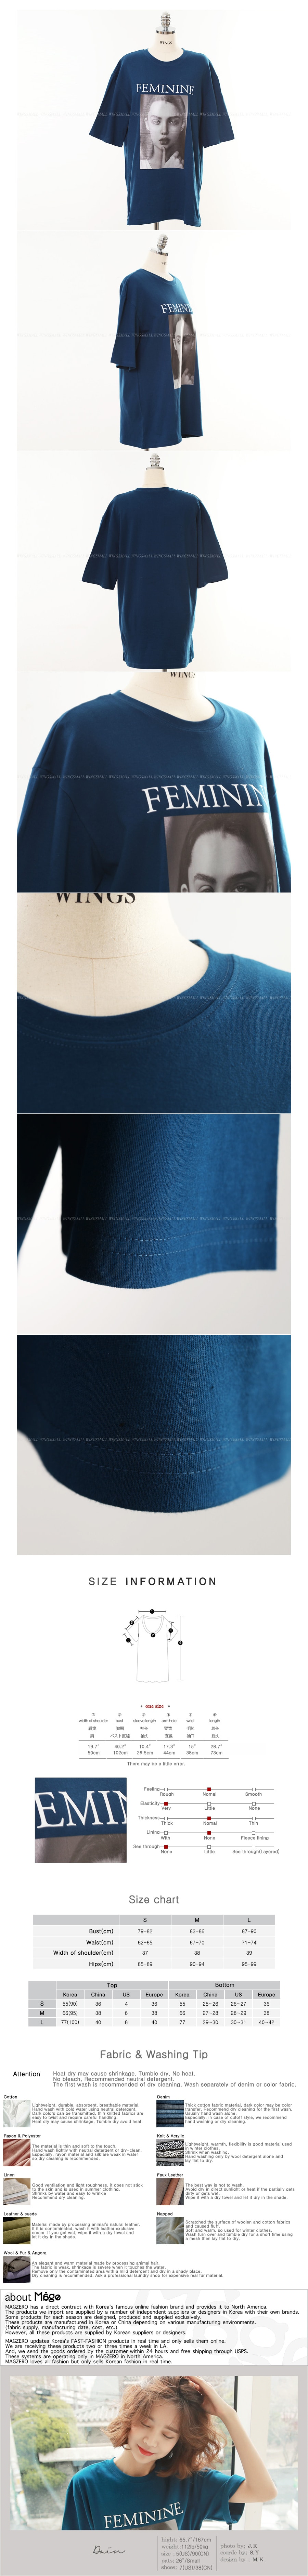 韩国正品 MAGZERO 女性图案宽松T恤 #钴蓝色 均码(S-M) [免费配送]